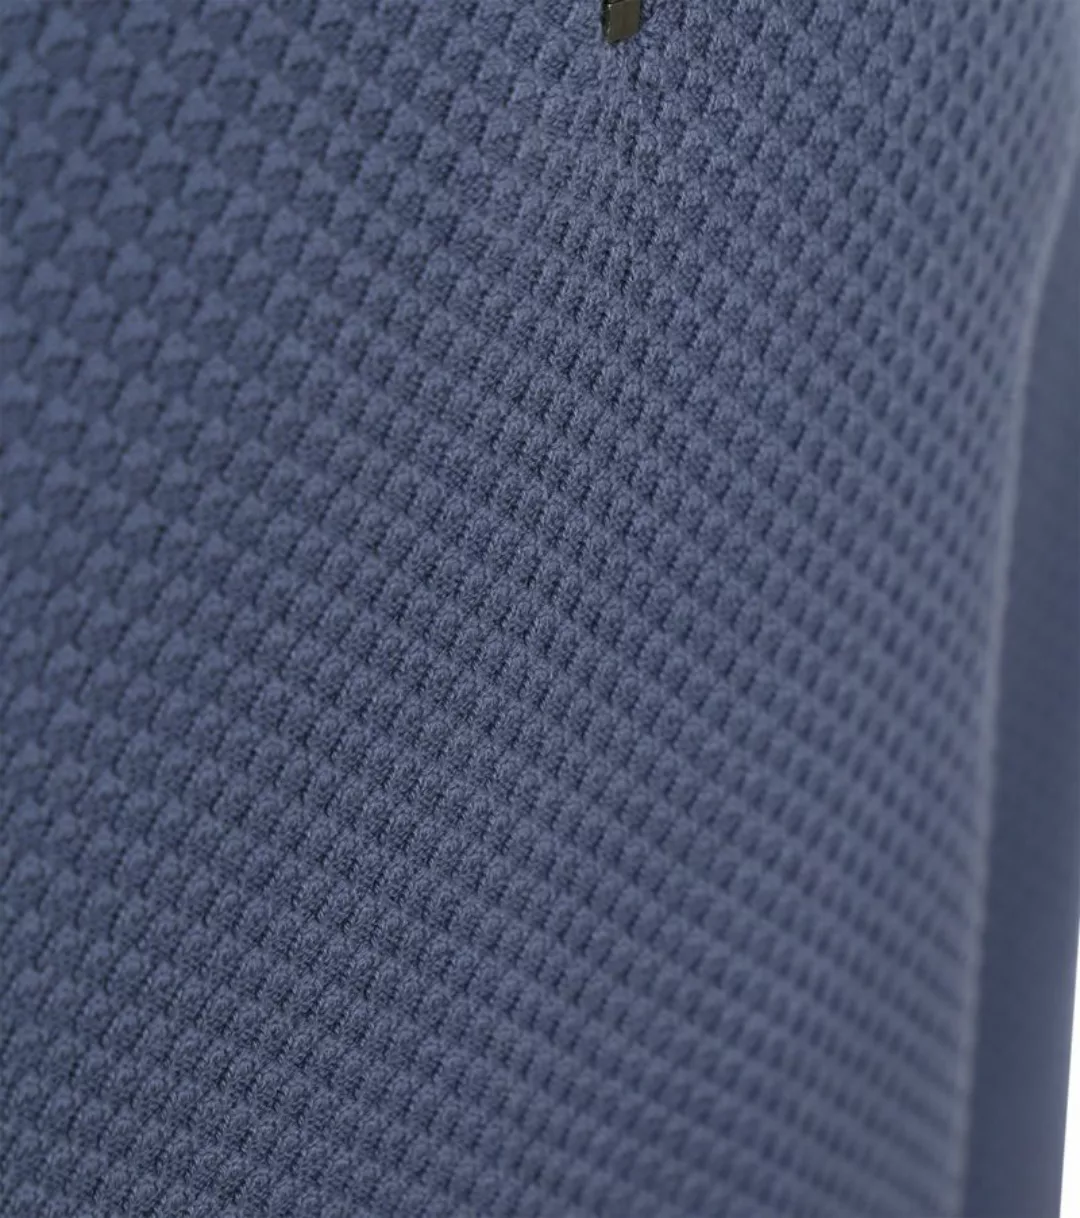 Tommy Hilfiger Half Zip Pullover Struktur Blau - Größe L günstig online kaufen